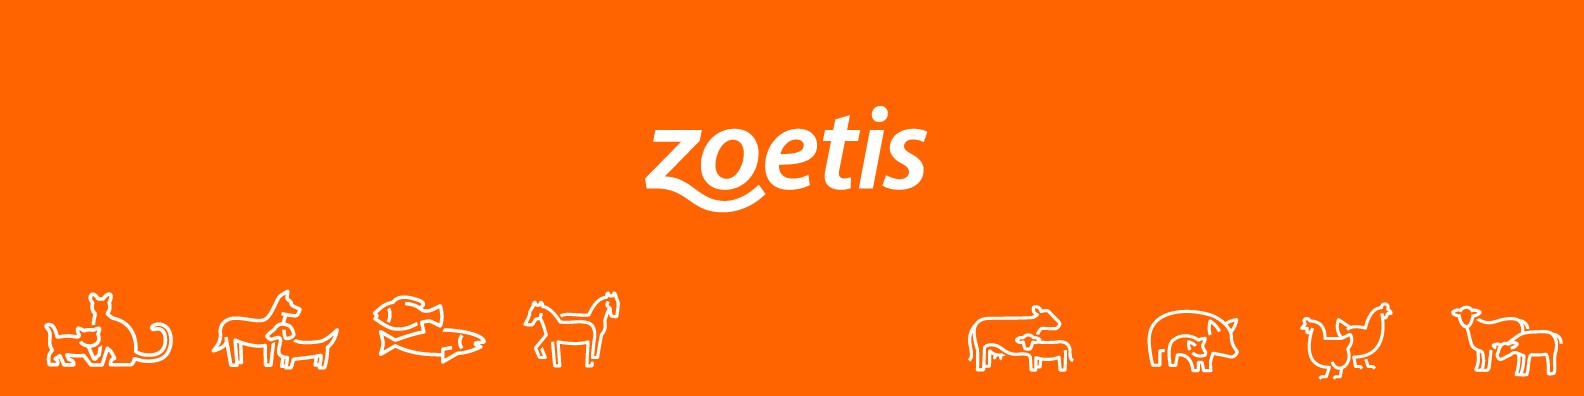 Zoetis-banner